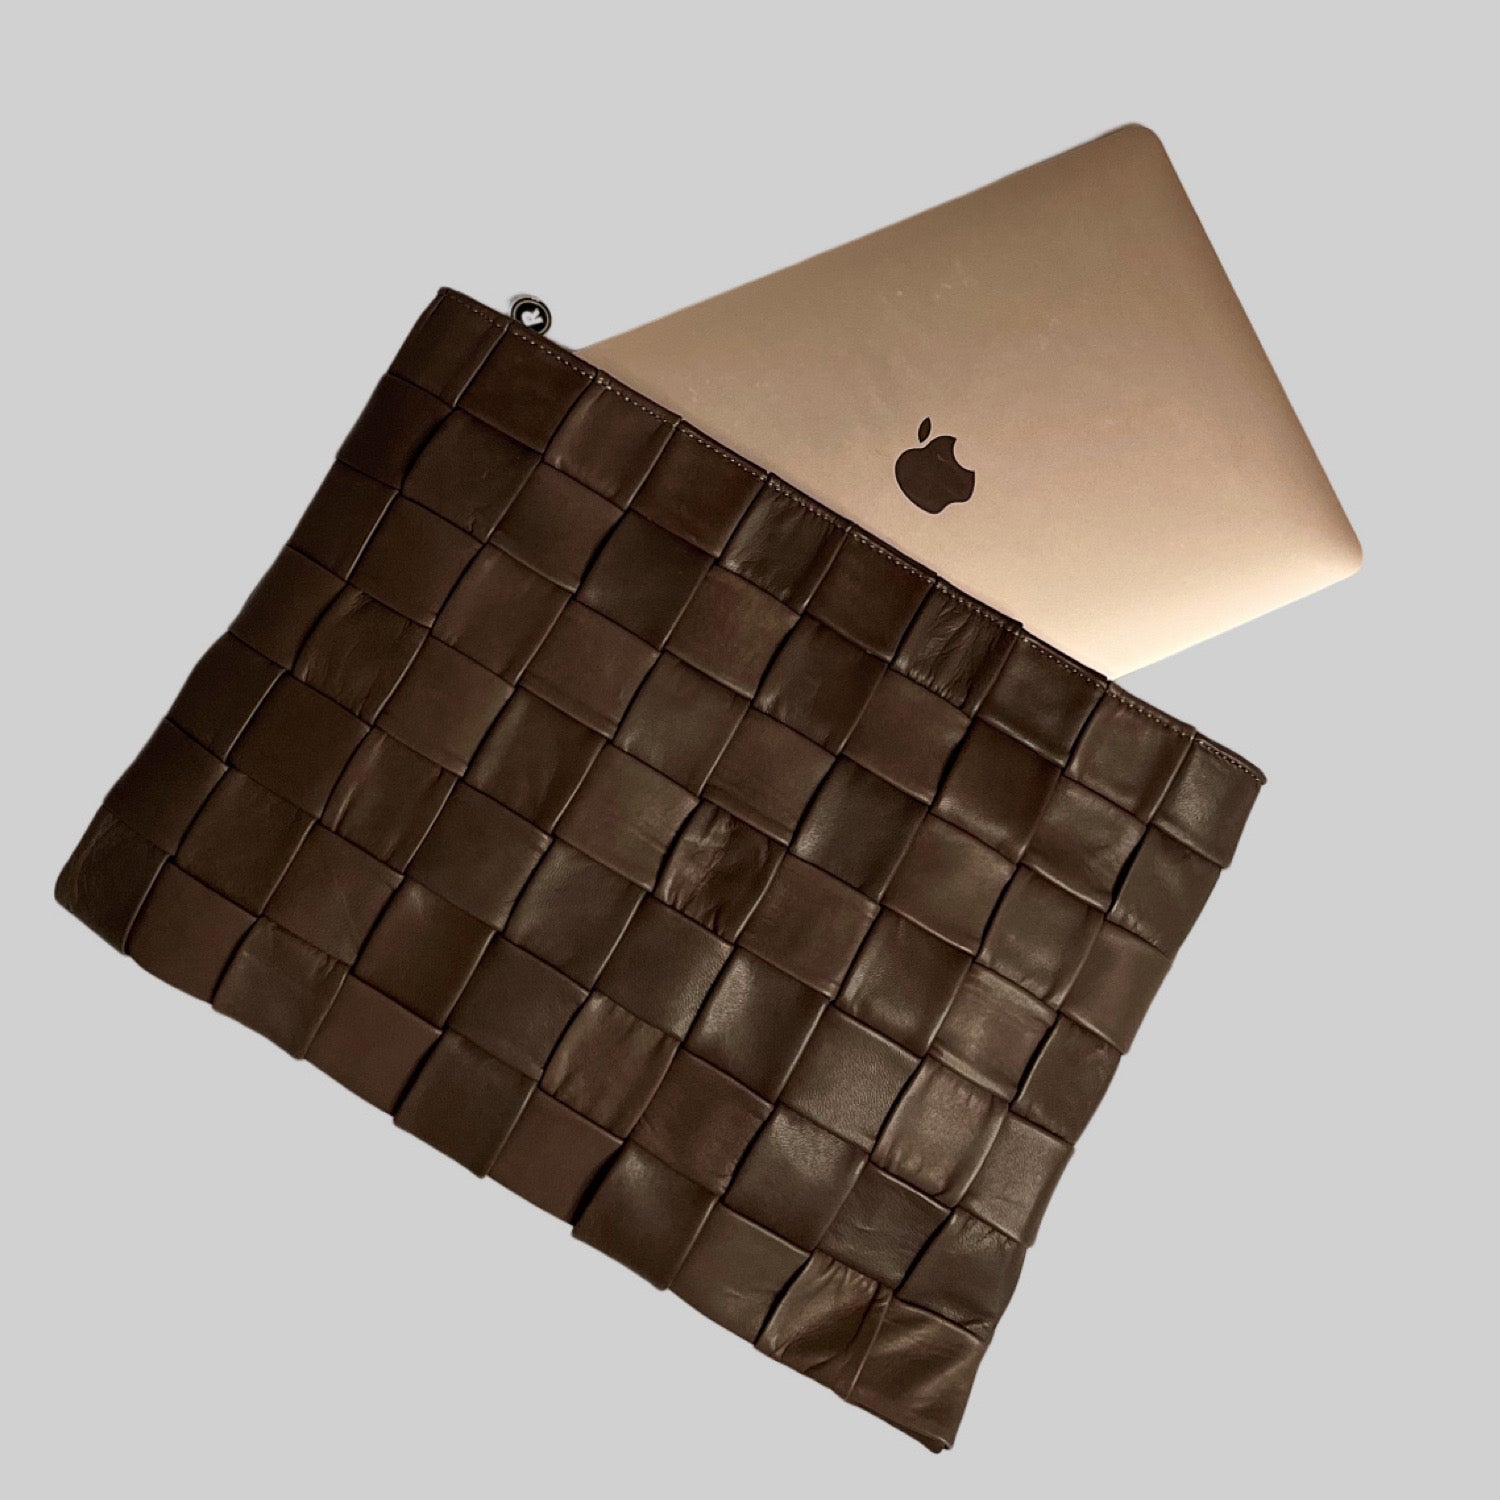 Ribichini Square Laptop-vesken i brunt: Stilig, romslig og beskyttende. Ideell for din bærbare datamaskin.